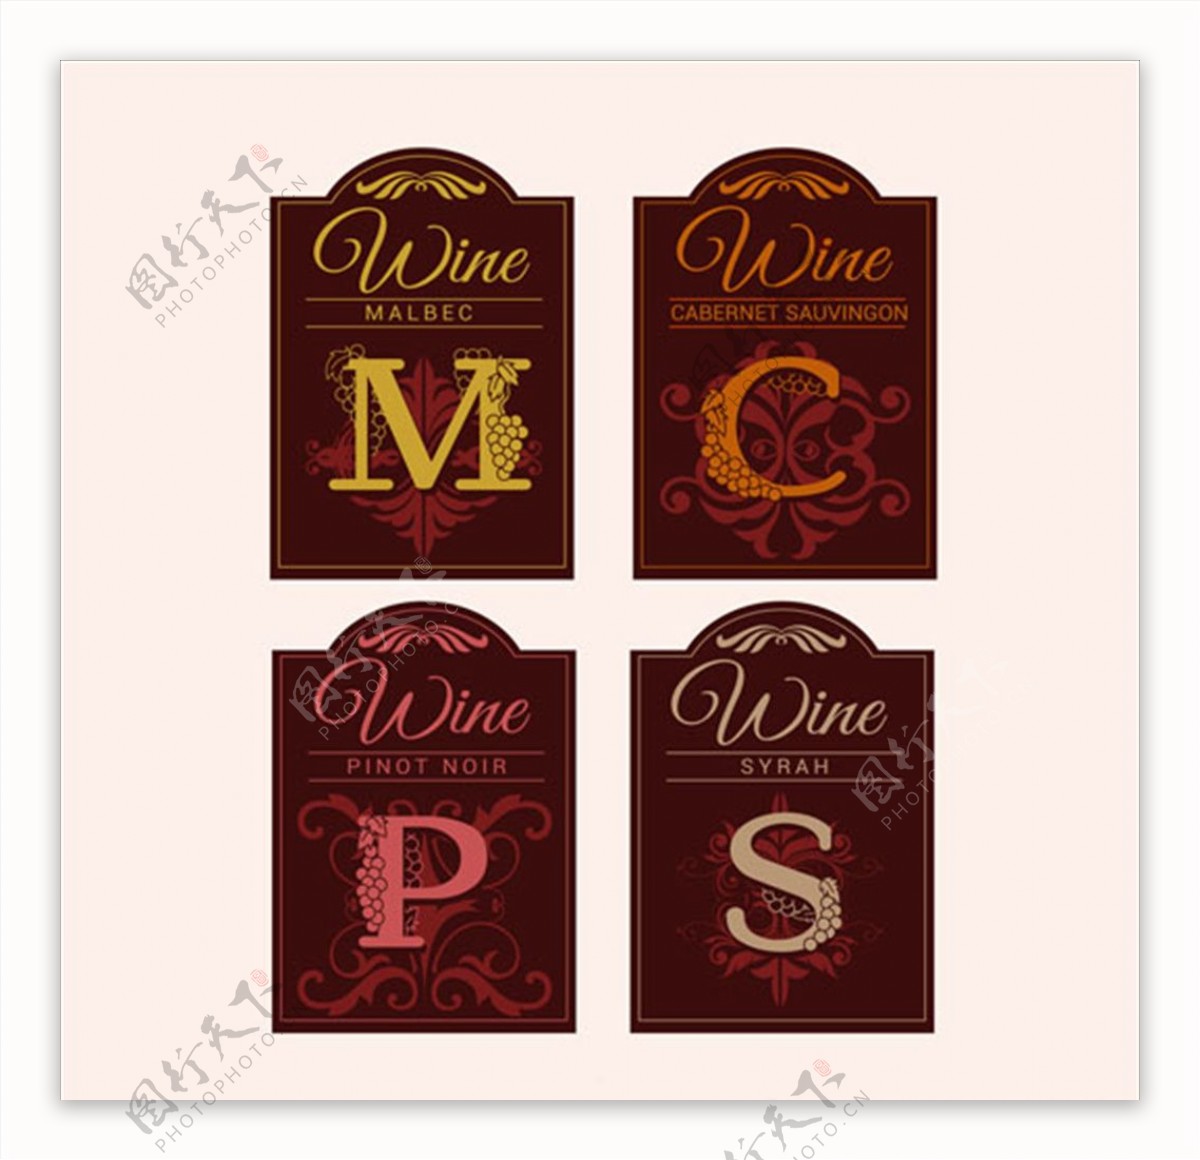 字母装饰性的葡萄酒标签